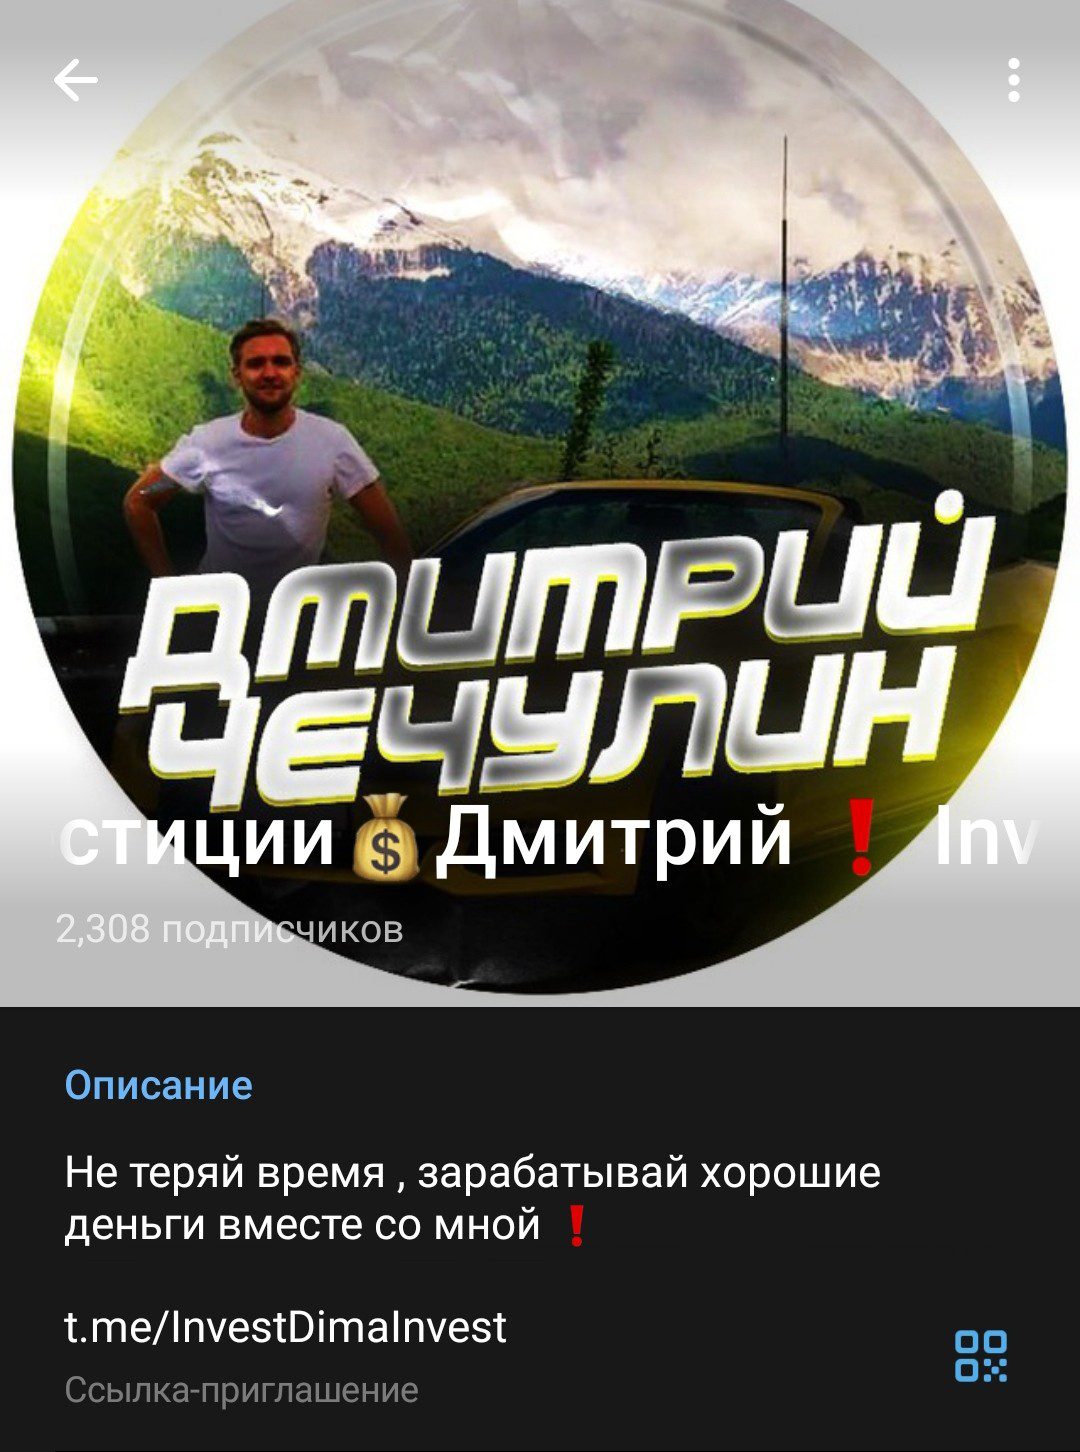 Телеграм Дмитрий Чечулин